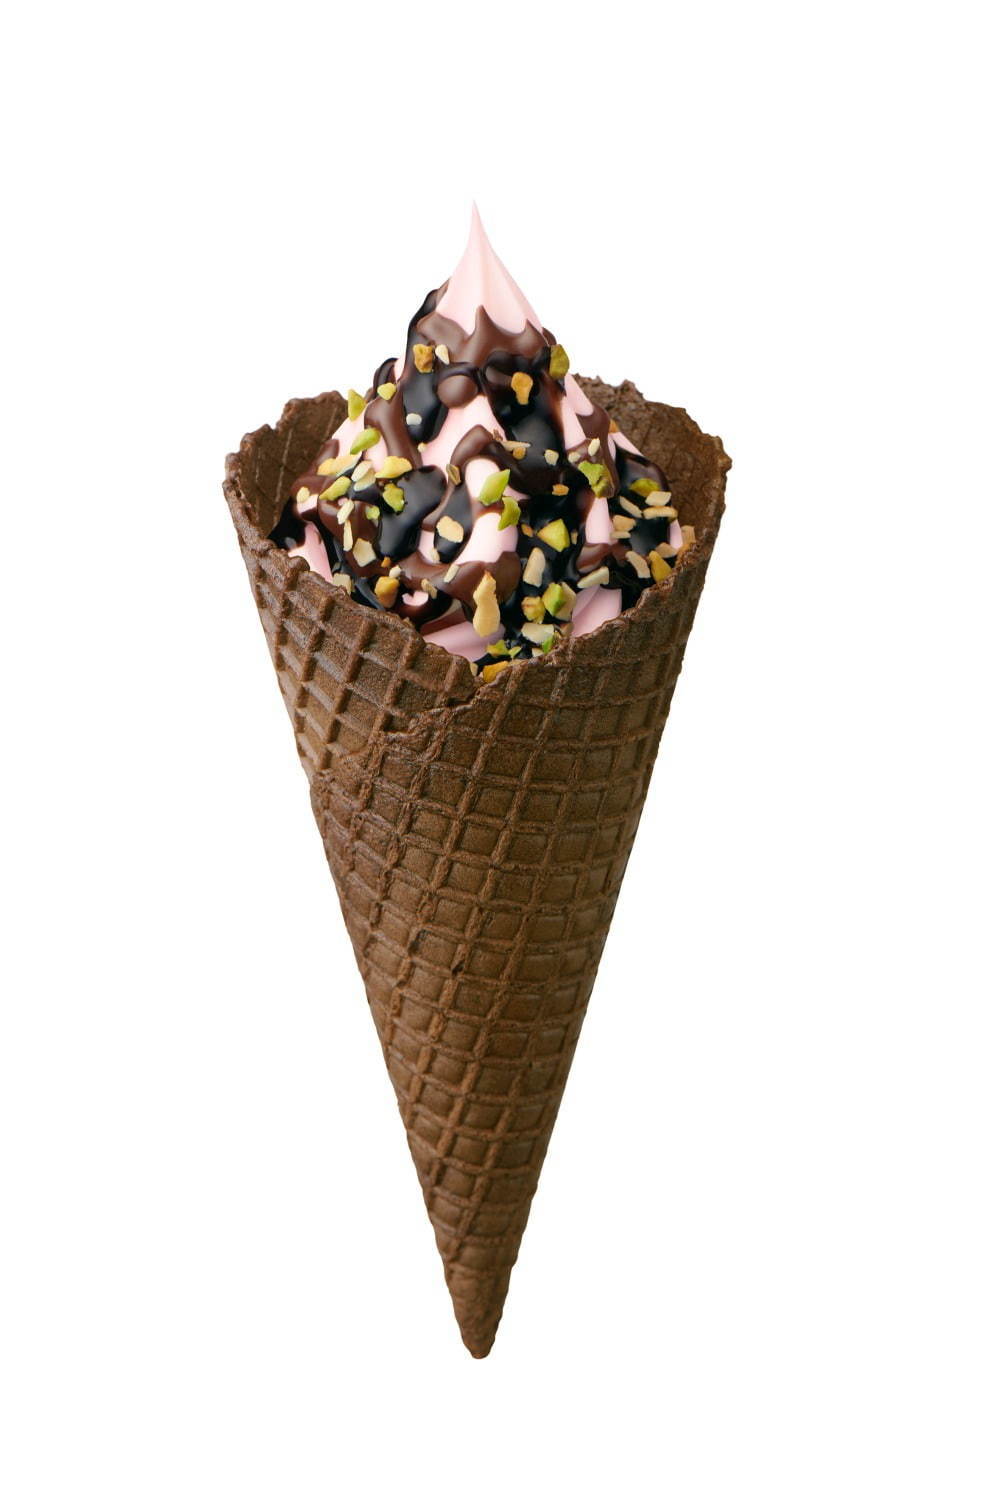 ミニストップの新作ソフトクリーム「ショコラいちごソフト」苺みるくソフト×濃厚チョコソース｜写真2